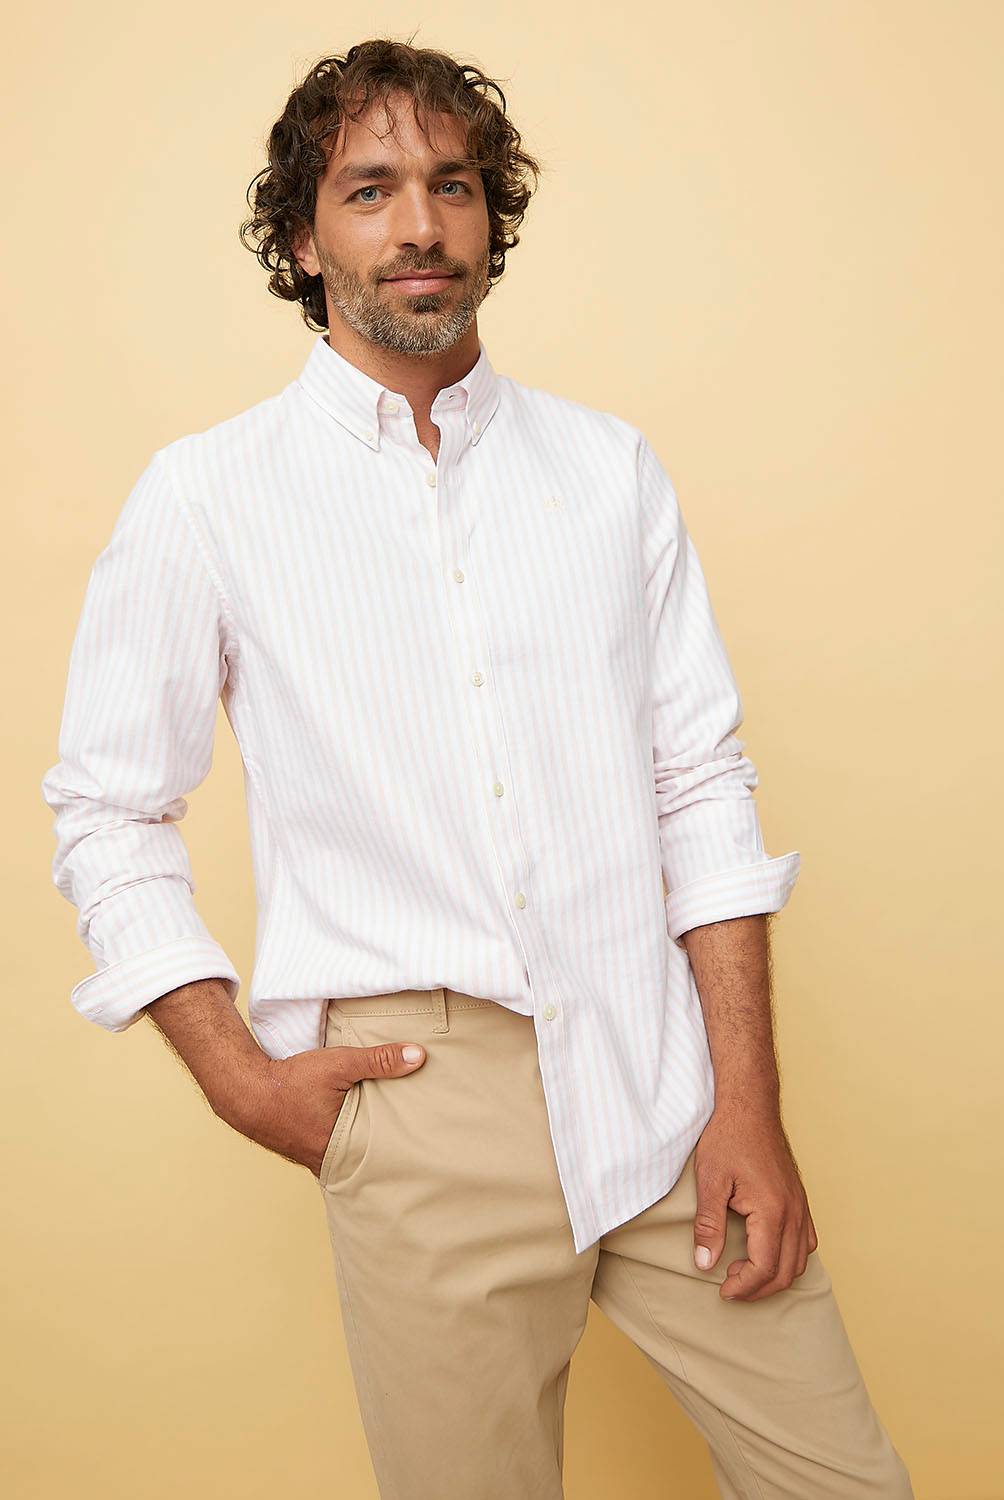 CASCAIS - Camisa Slim fit 100% algodón hombre Cascais